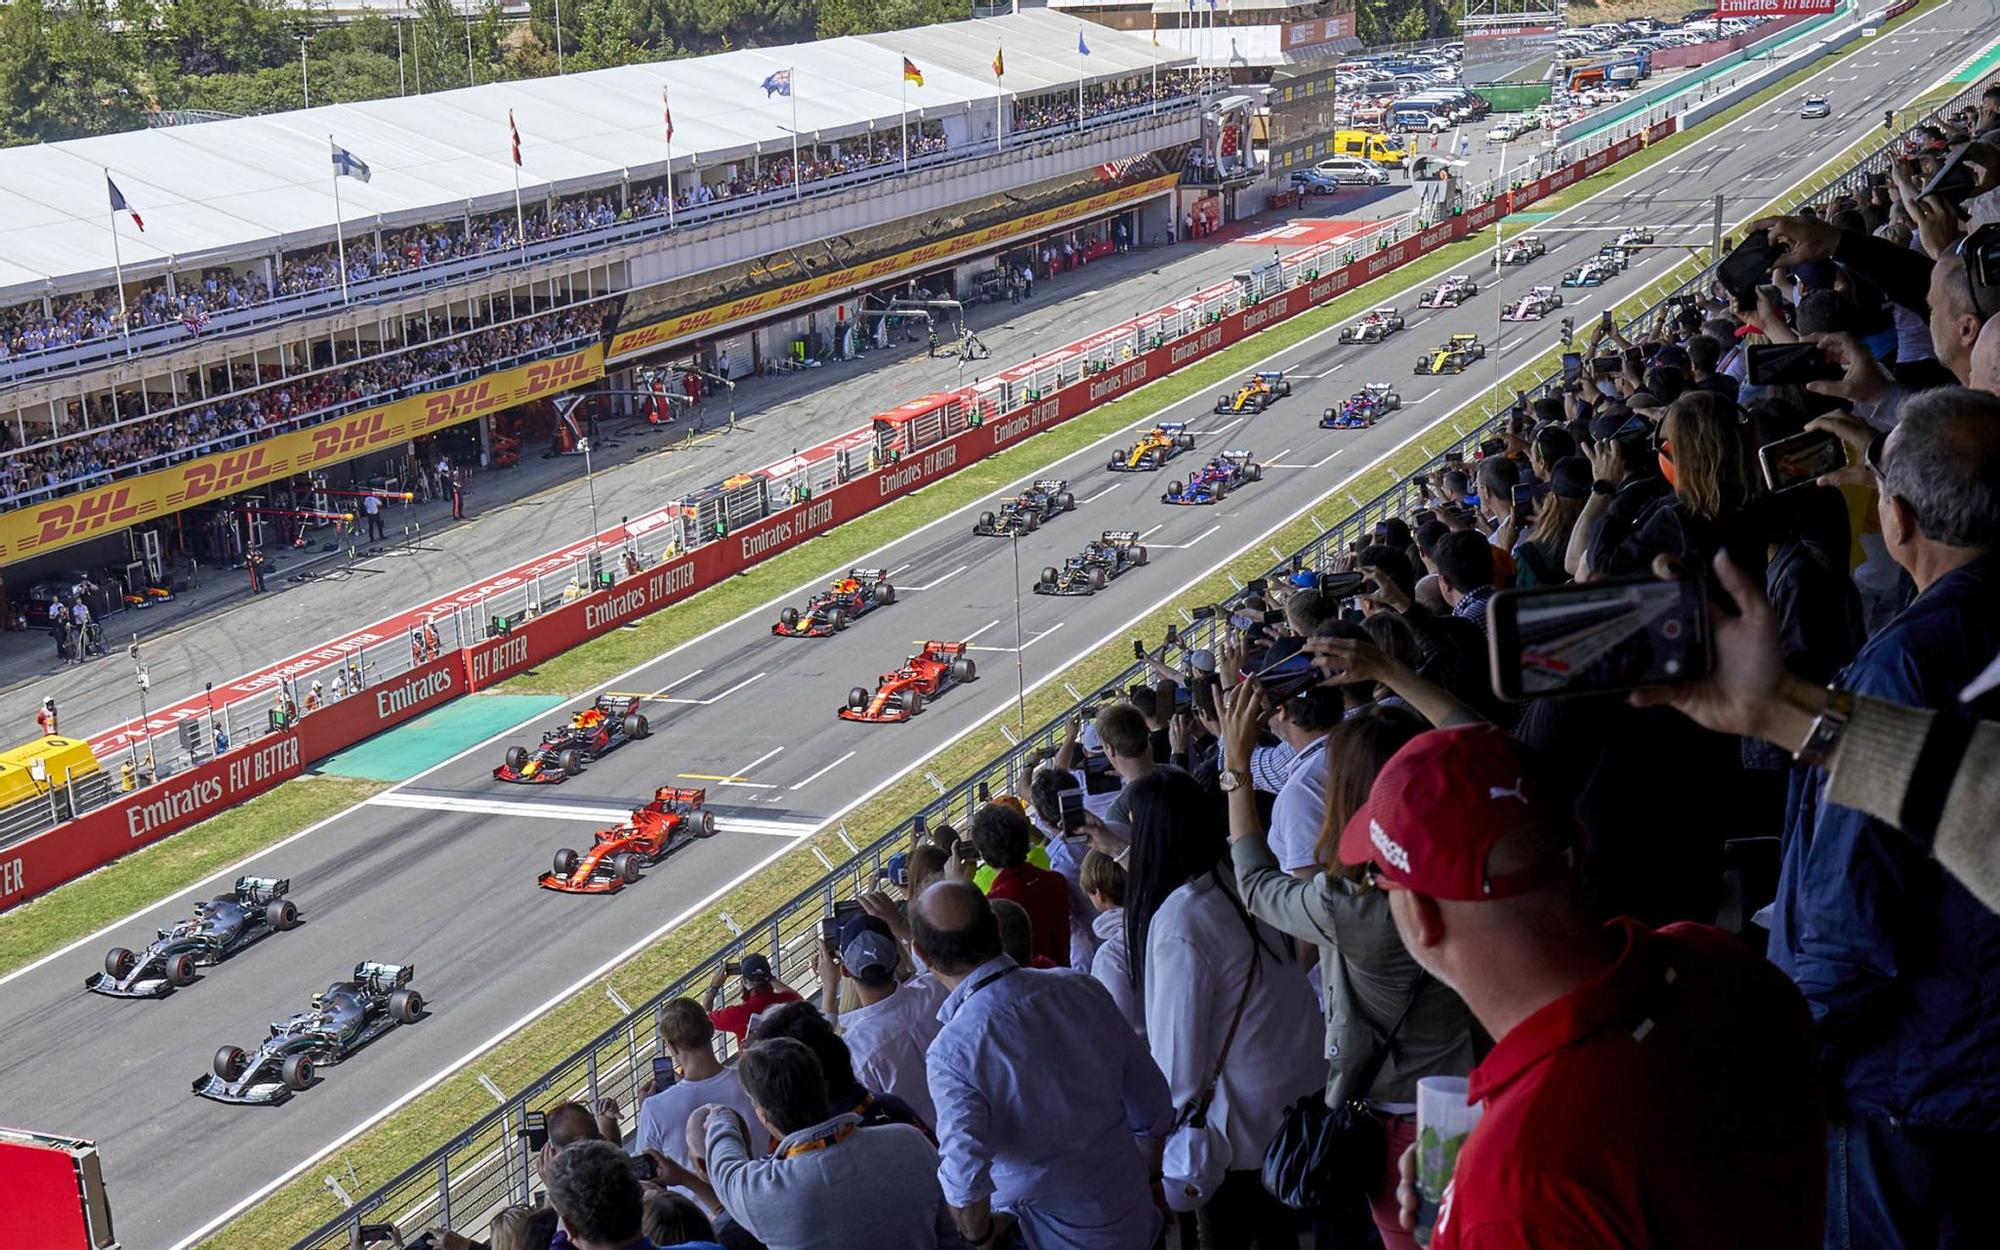 El Circuit espera repetir en el futuro ediciones exitosas y con público en las gradas